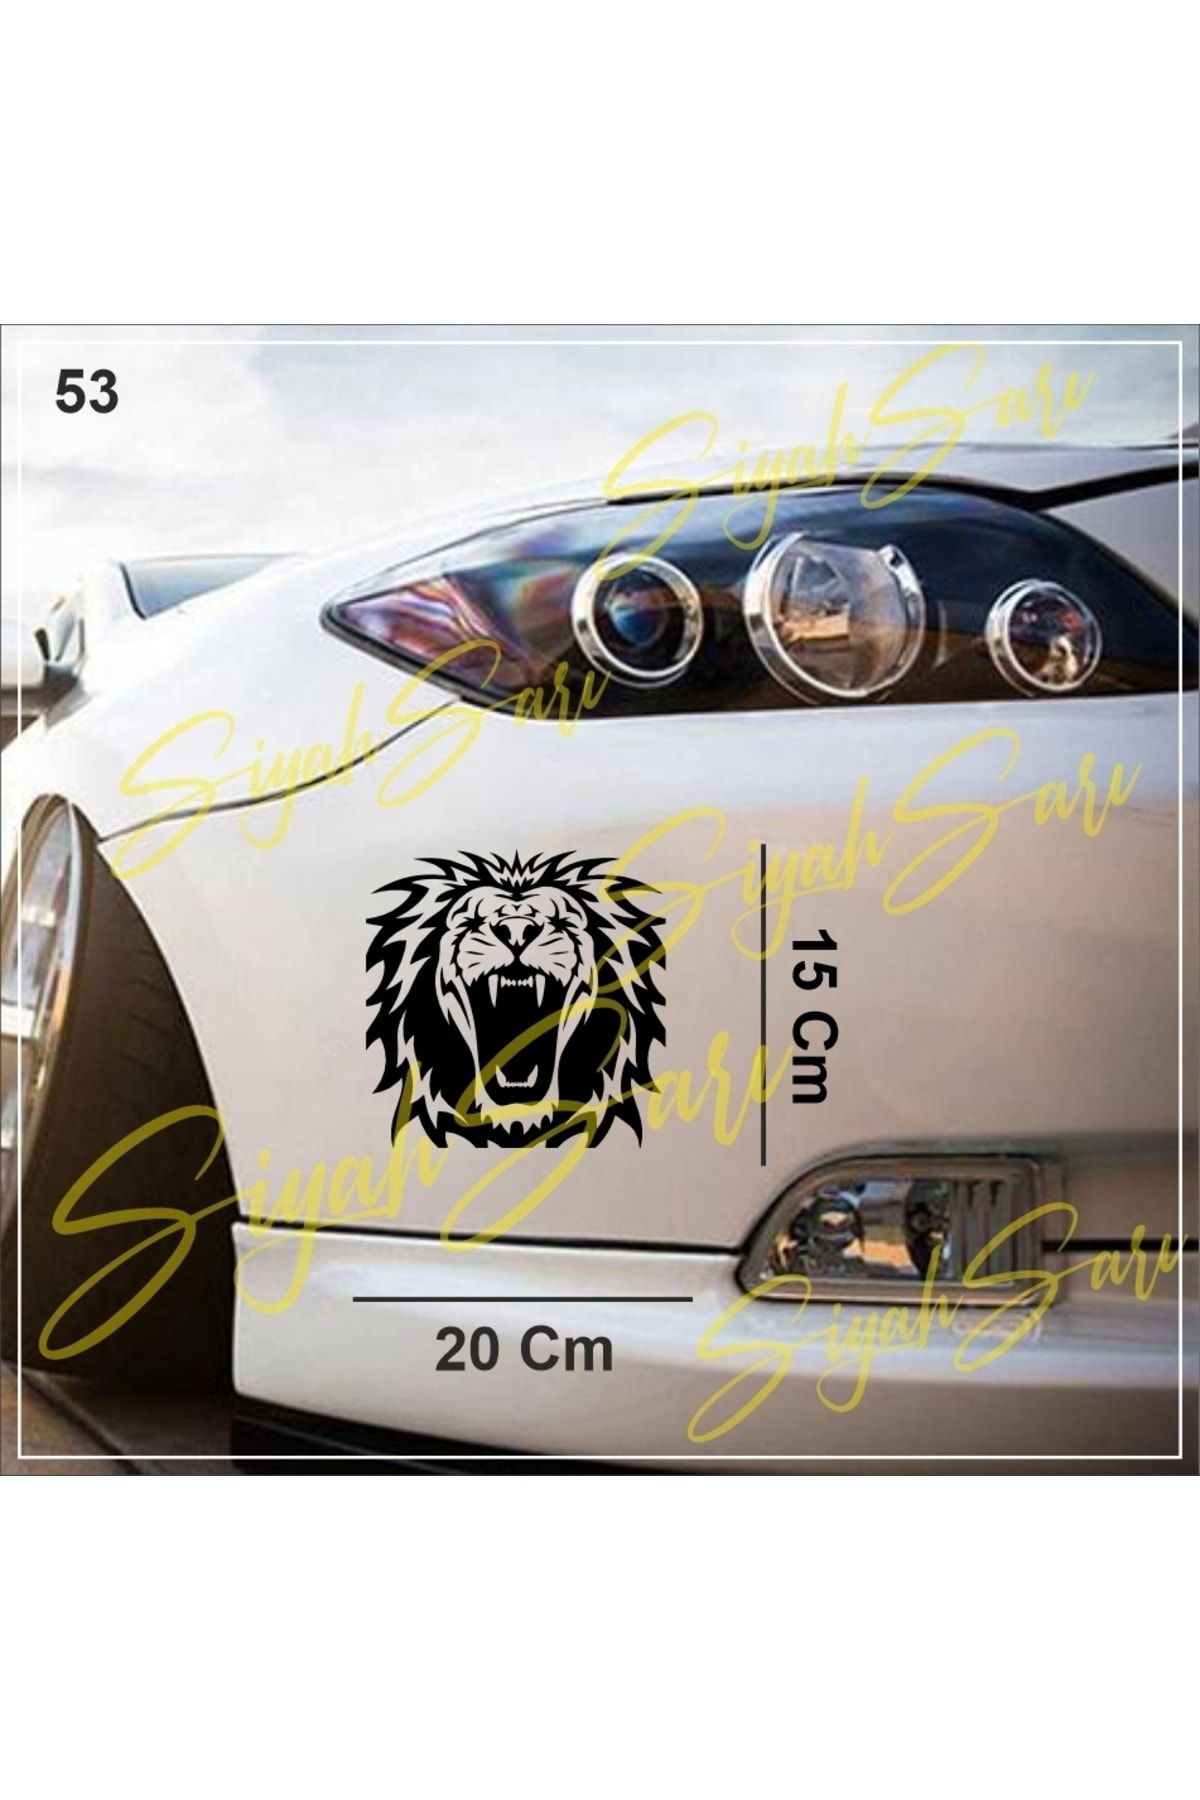 S&S HEDİYELİK EŞYA Kükreyen aslan kral king Araba Araç Oto Ev Duvar Dekoratif Sticker Etiket Folyo